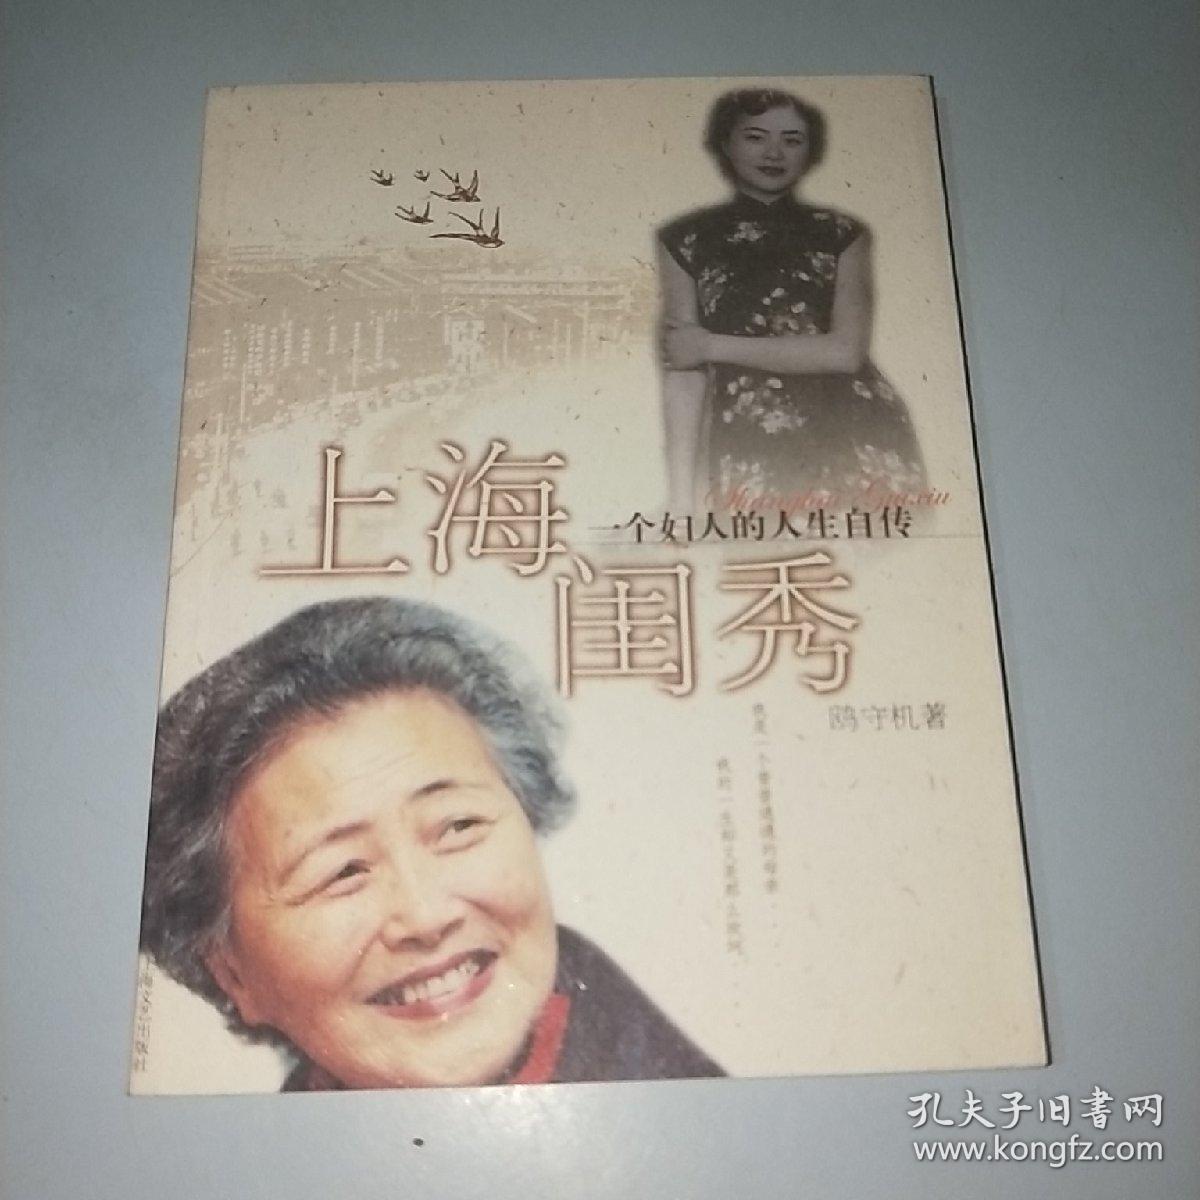 上海闺秀:一个妇人的人生自传